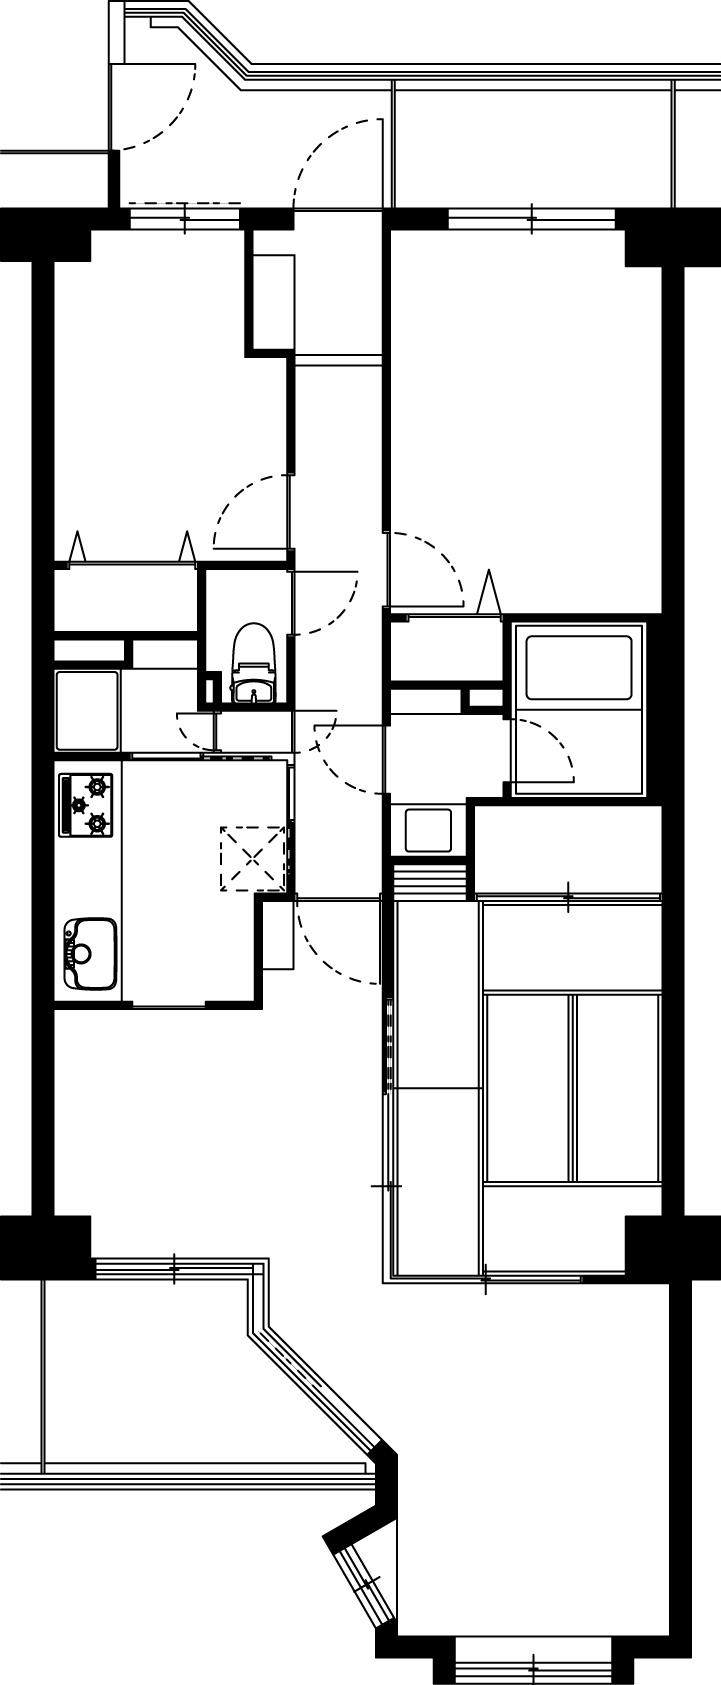 Floor plan. 3LDK, Price 16.5 million yen, Occupied area 71.37 sq m , Balcony area 8.83 sq m indoor floor plan